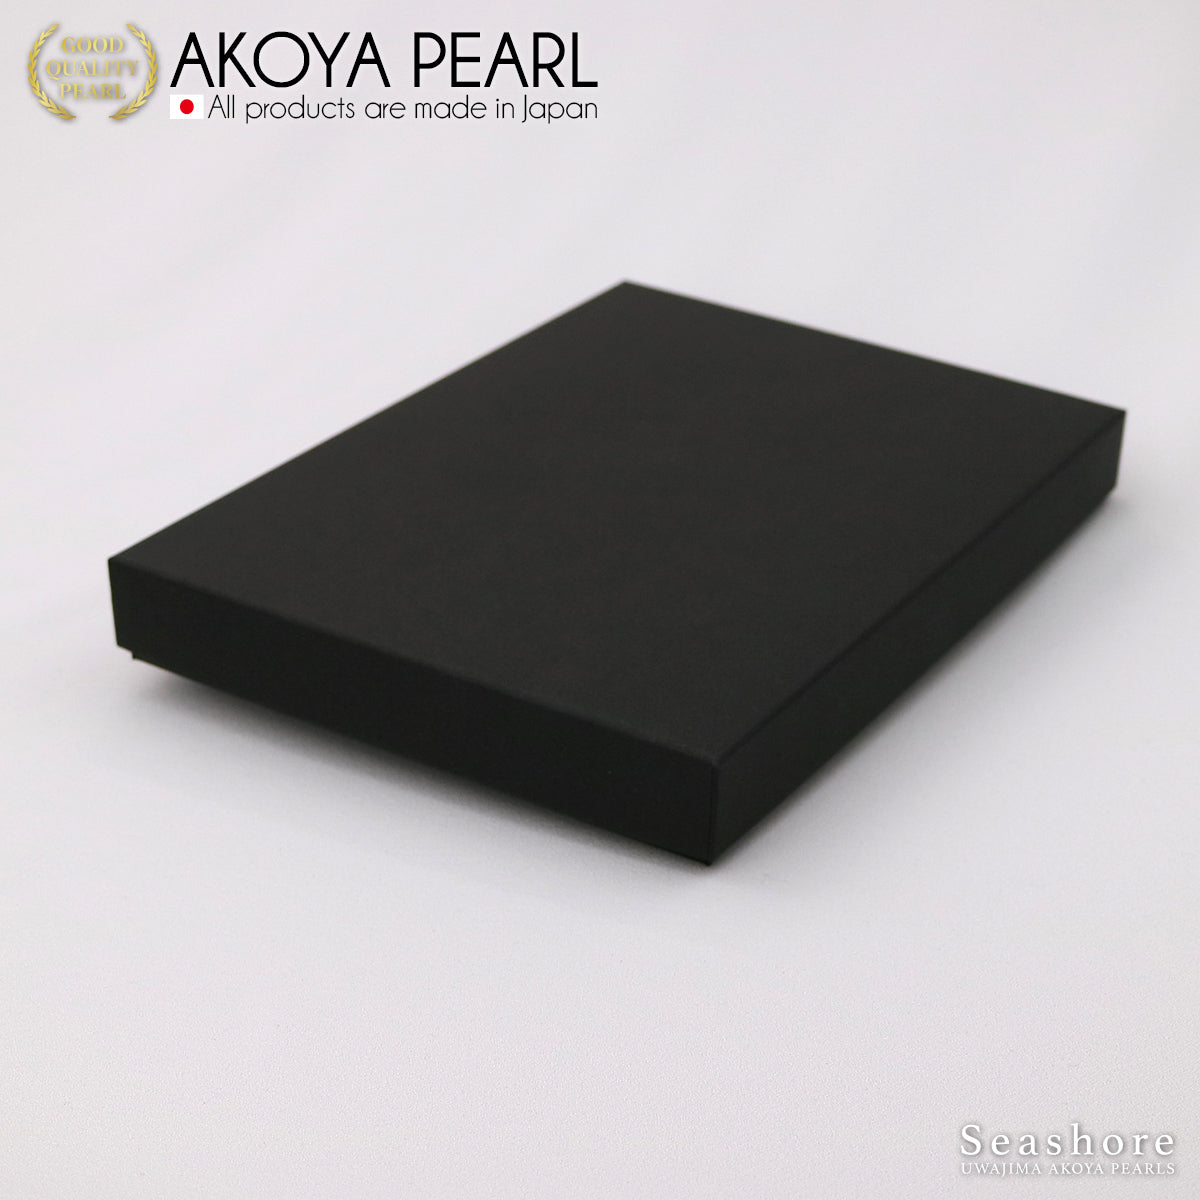 欧米茄纸盒项链盒黑色/浅灰色 (1.0.745.850)